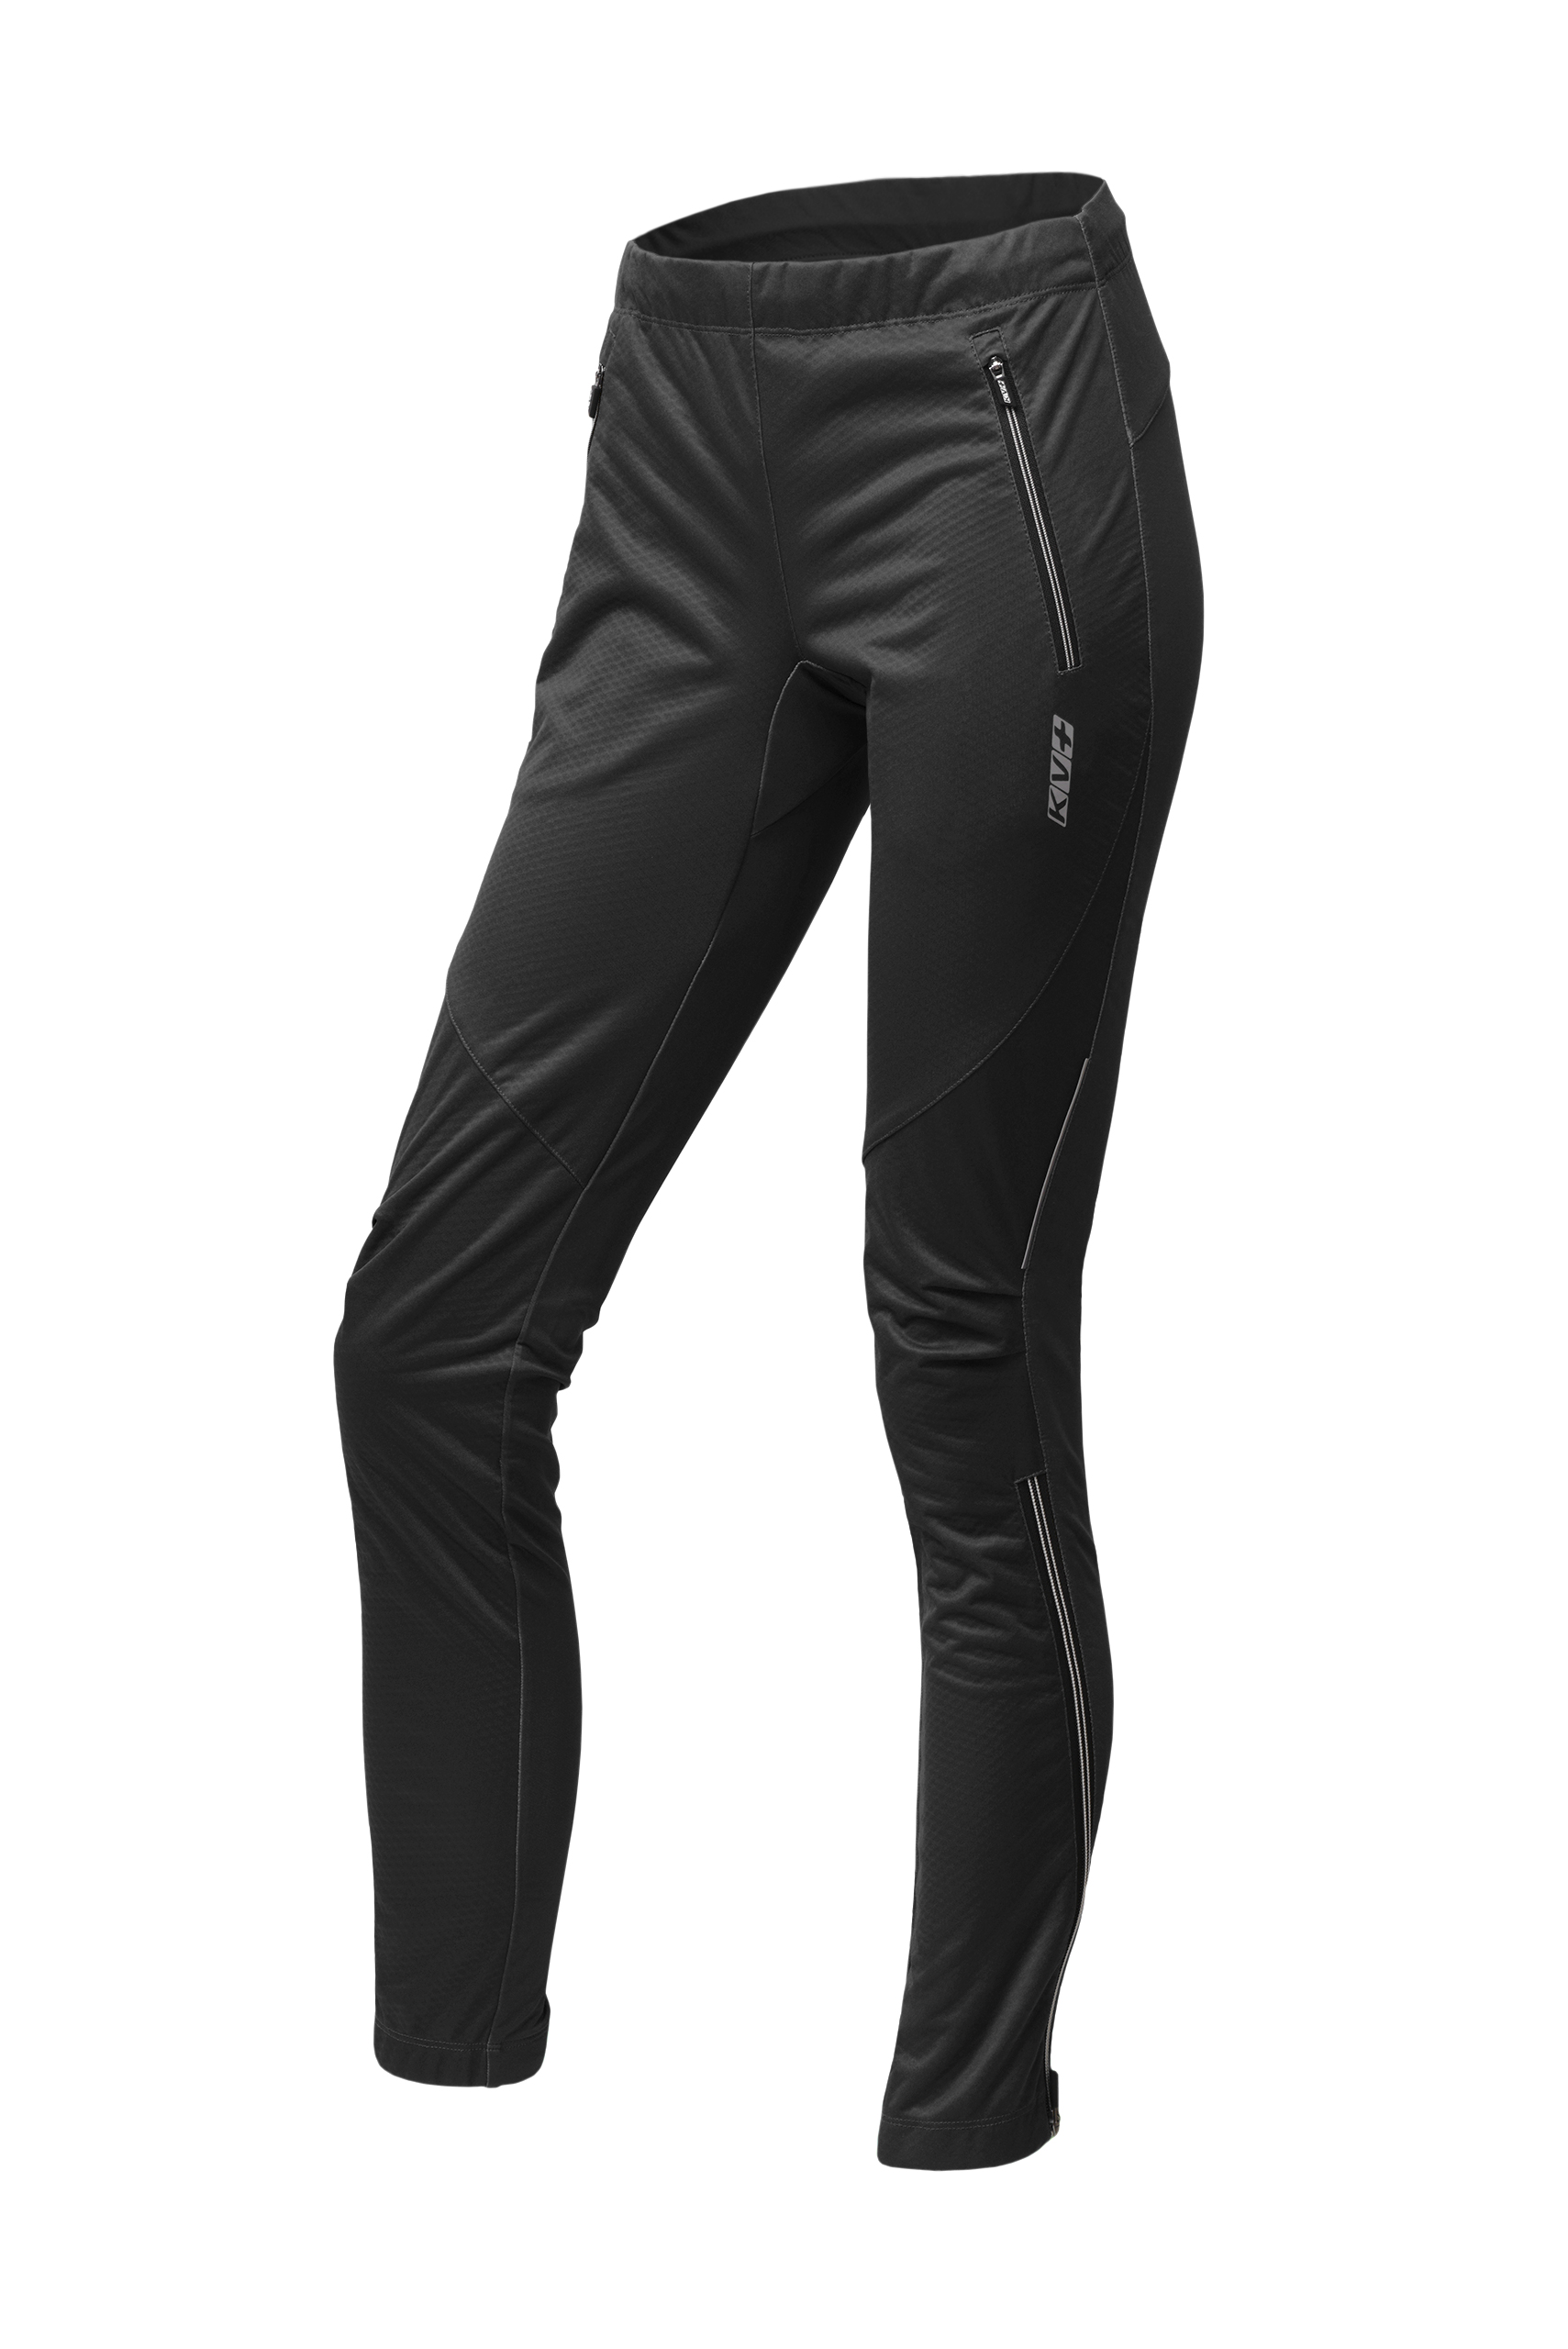 Спортивные брюки женские KV+ Tornado pants 22 черные XL